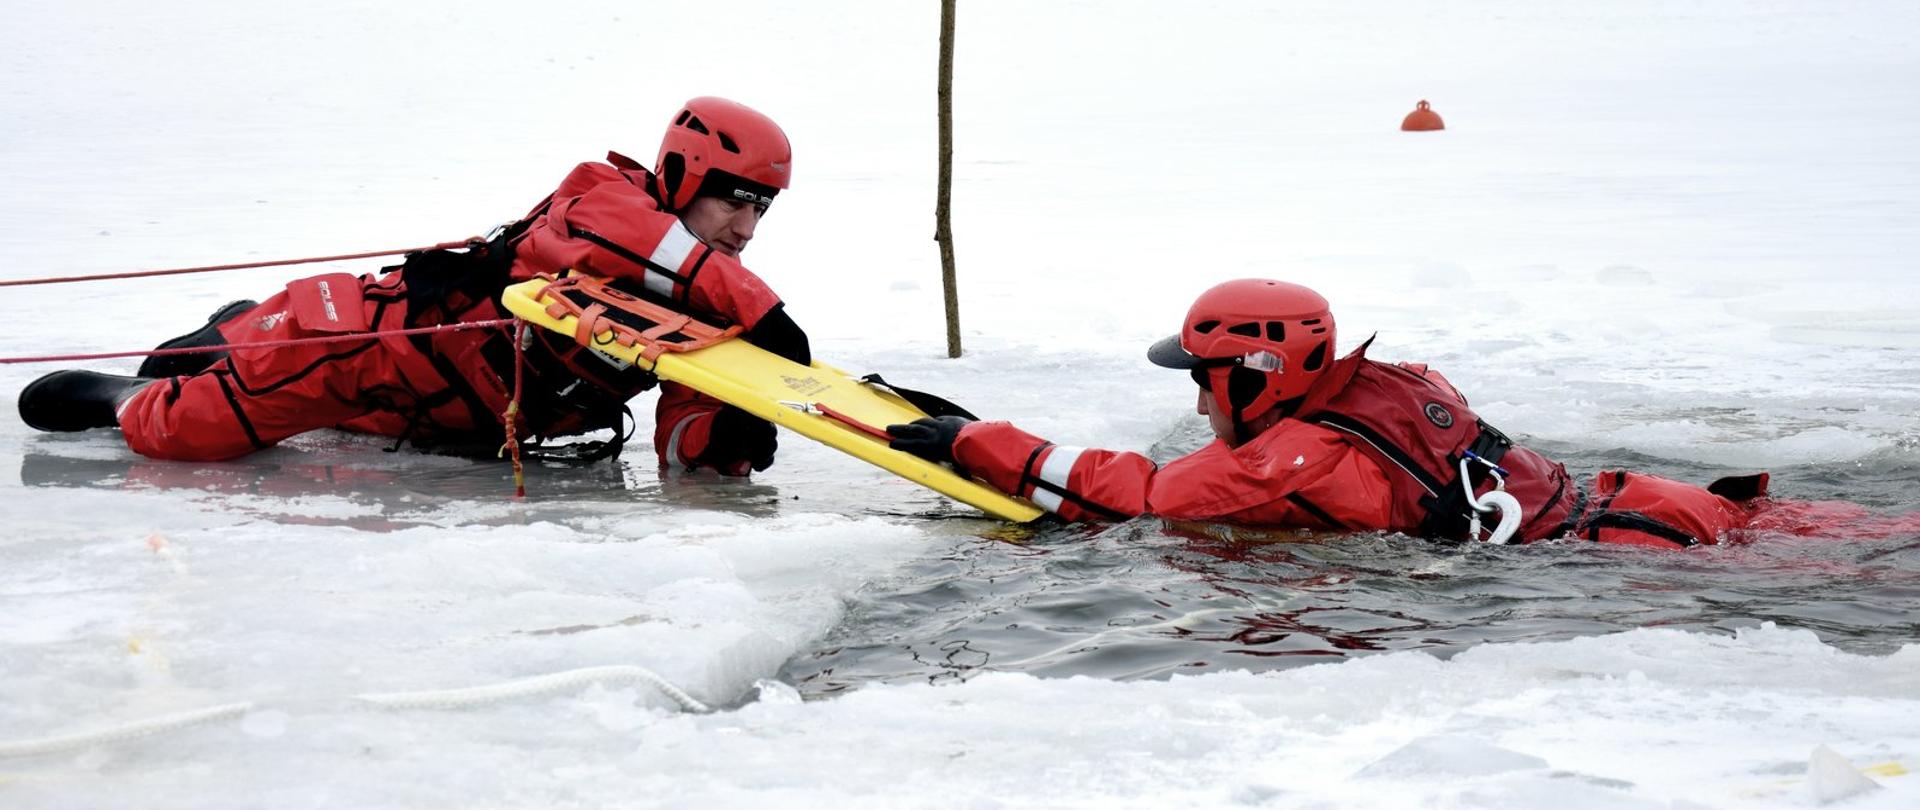 Zdjęcie zrobione na zewnątrz, nad zamarzniętym zbiornikiem wodnym. Dwóch strażaków, ubranych w skafandry zabezpieczające przed wychłodzeniem. Ratownicy ćwiczą działania na zamarzniętym akwenie. Jeden z nich (po prawej stronie zdjęcia) zanurzony jest w wyciętym w lodzie przeręblu. Drugi strażak leżący na lodzie, używając deski ortopedycznej próbuje wyciągnąć strażaka z przerębli na lód.